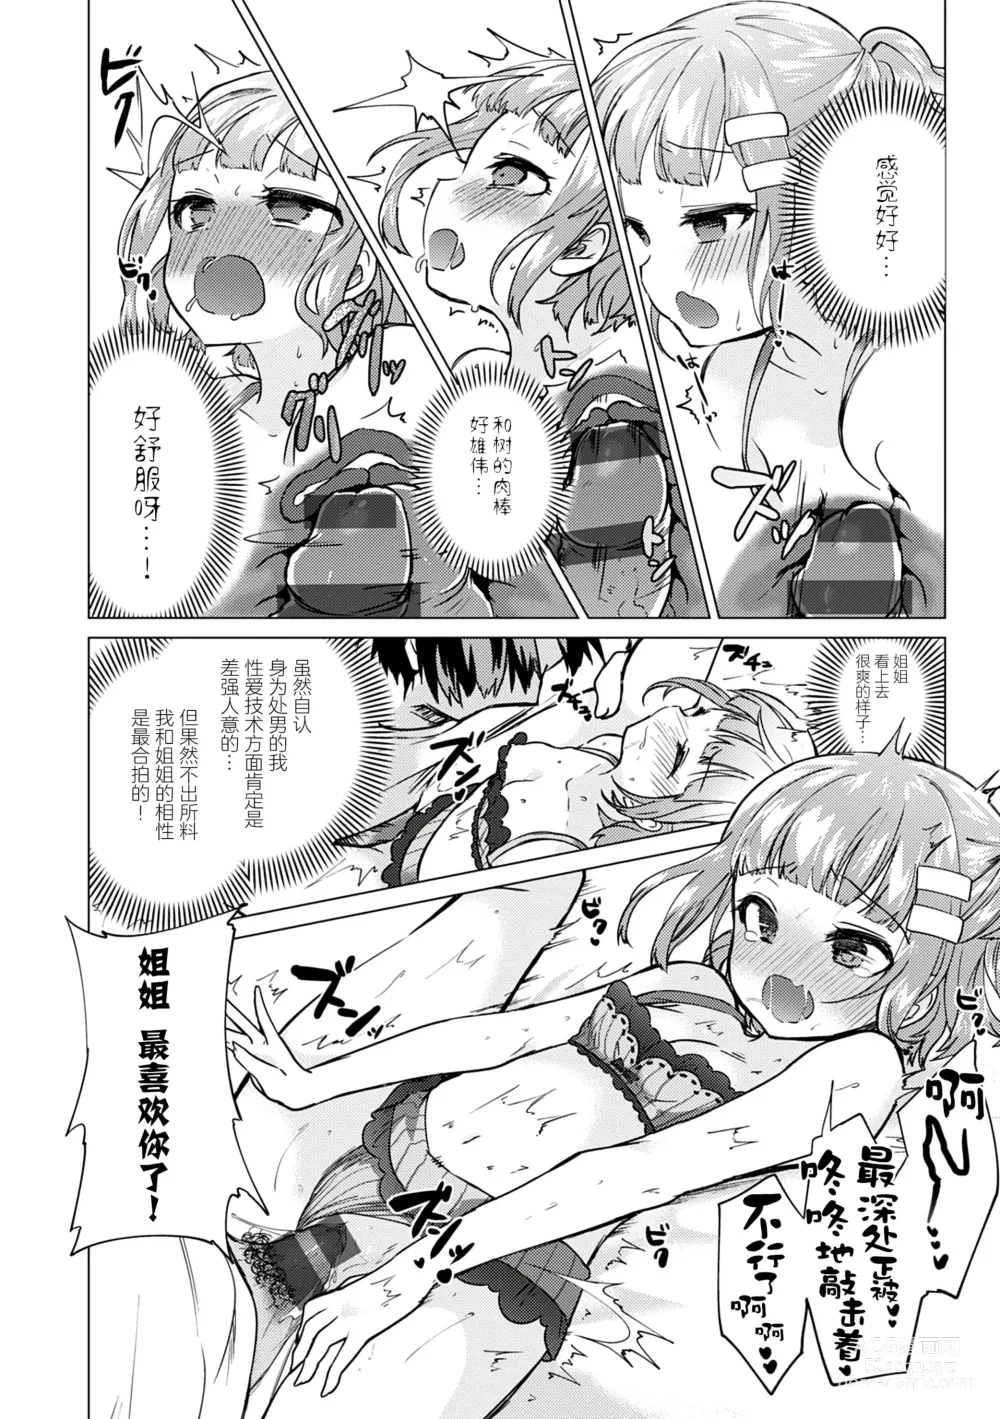 Page 180 of manga Otouto Senyou